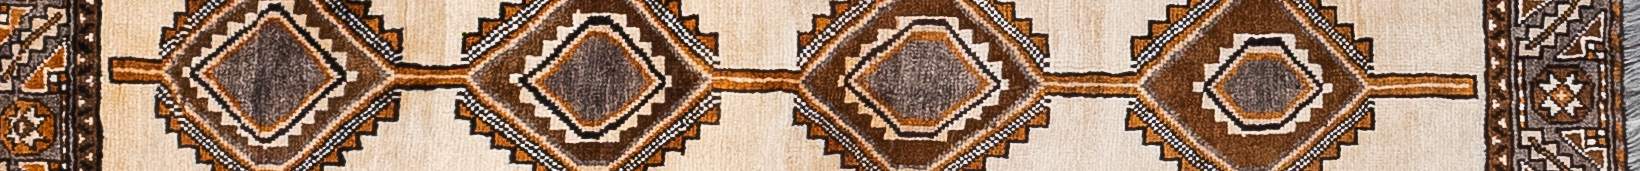 Shiraz Persian Carpet Rug N1Carpet Canada Montreal Tapis Persan 650